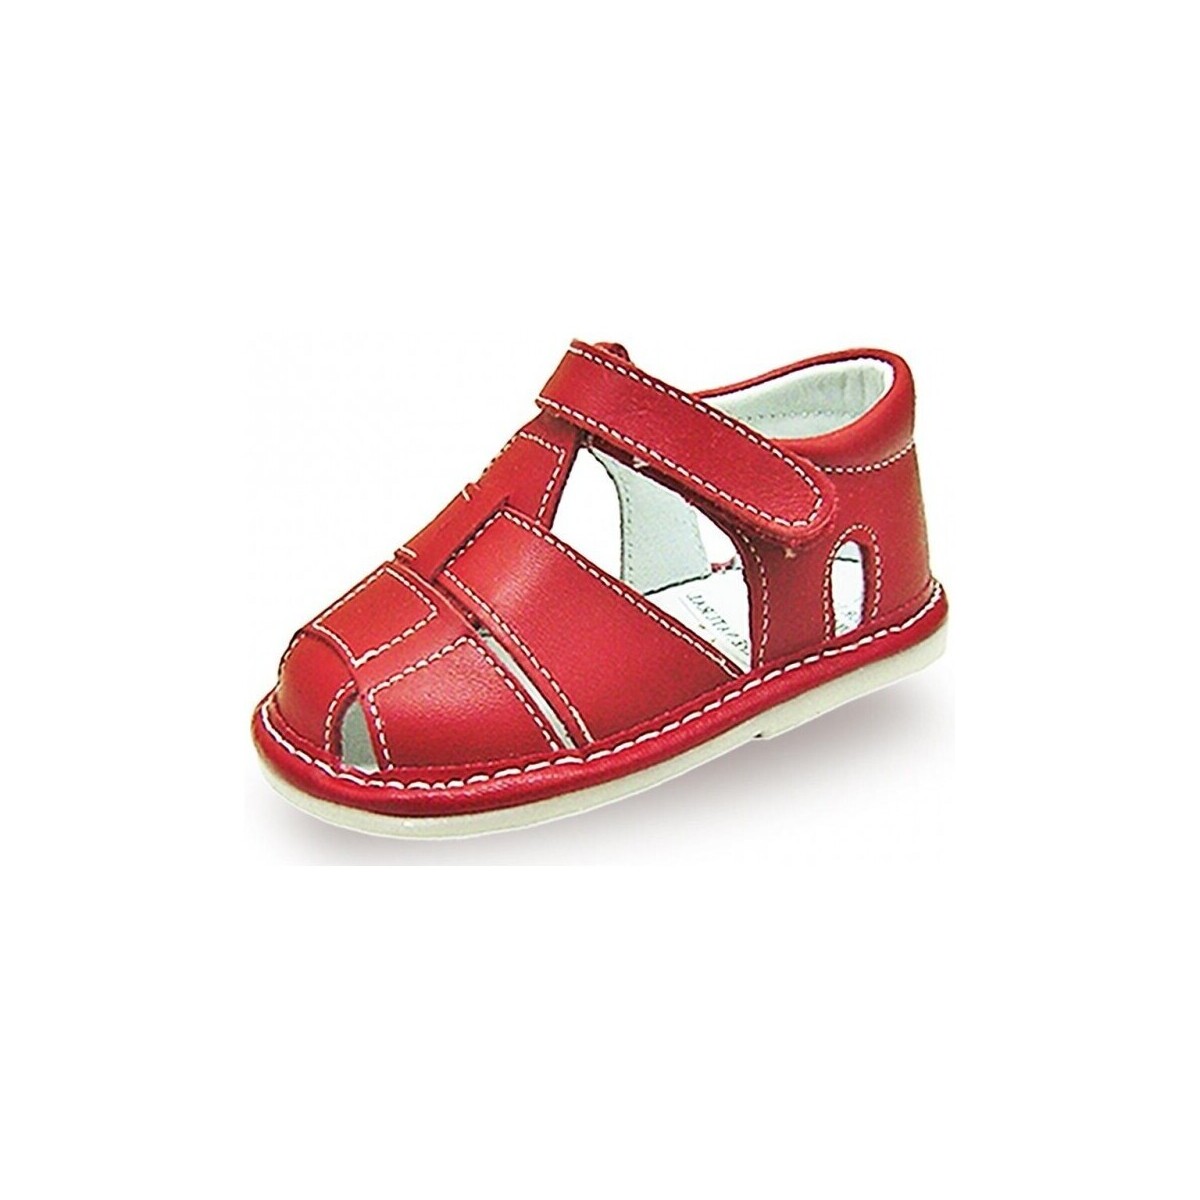 Zapatos Sandalias Colores 21847-15 Rojo